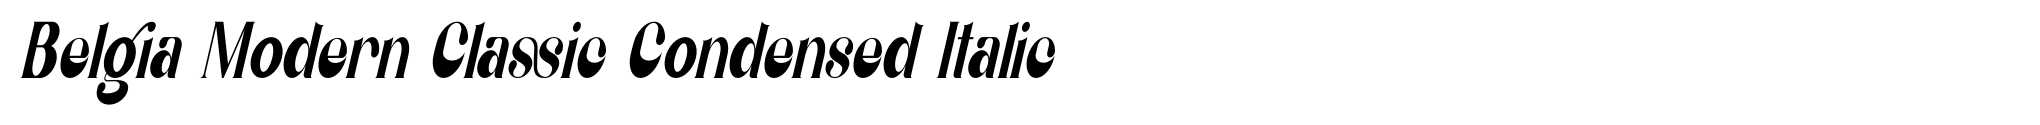 Belgia Modern Classic Condensed Italic image